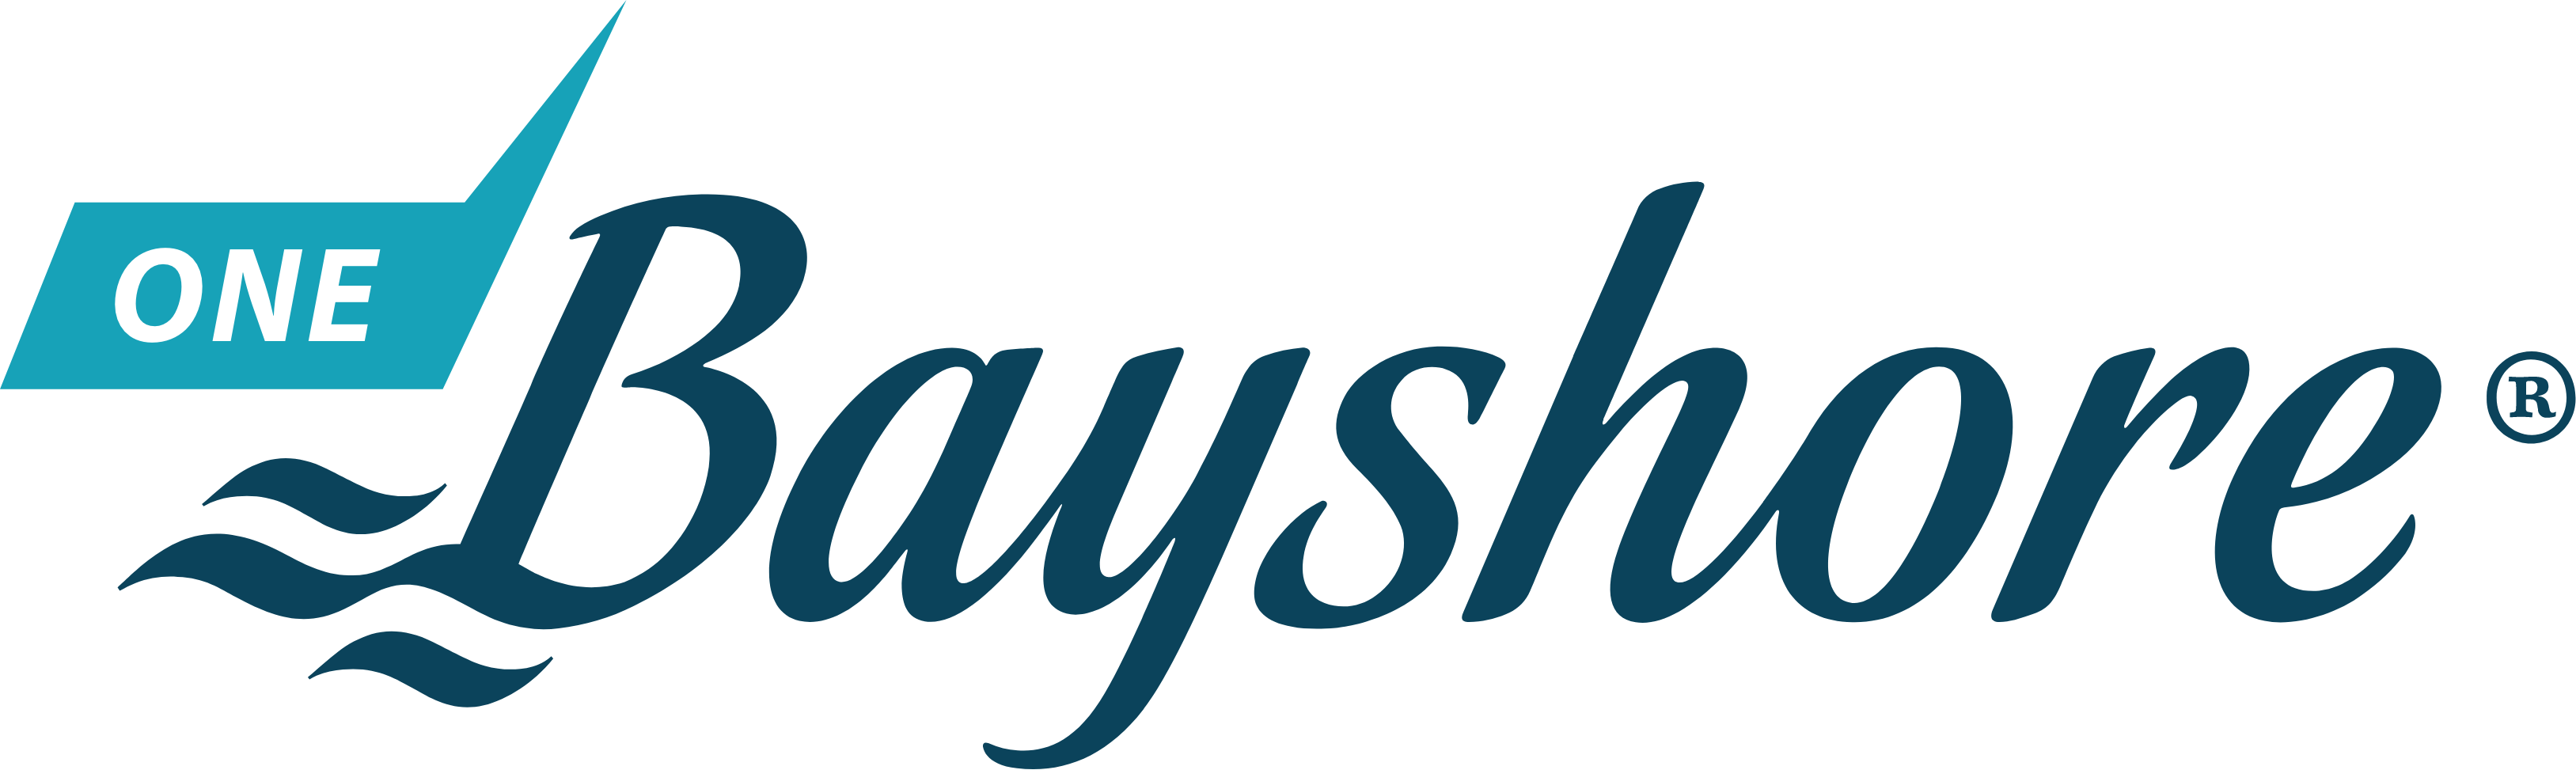 One Bayshore logo